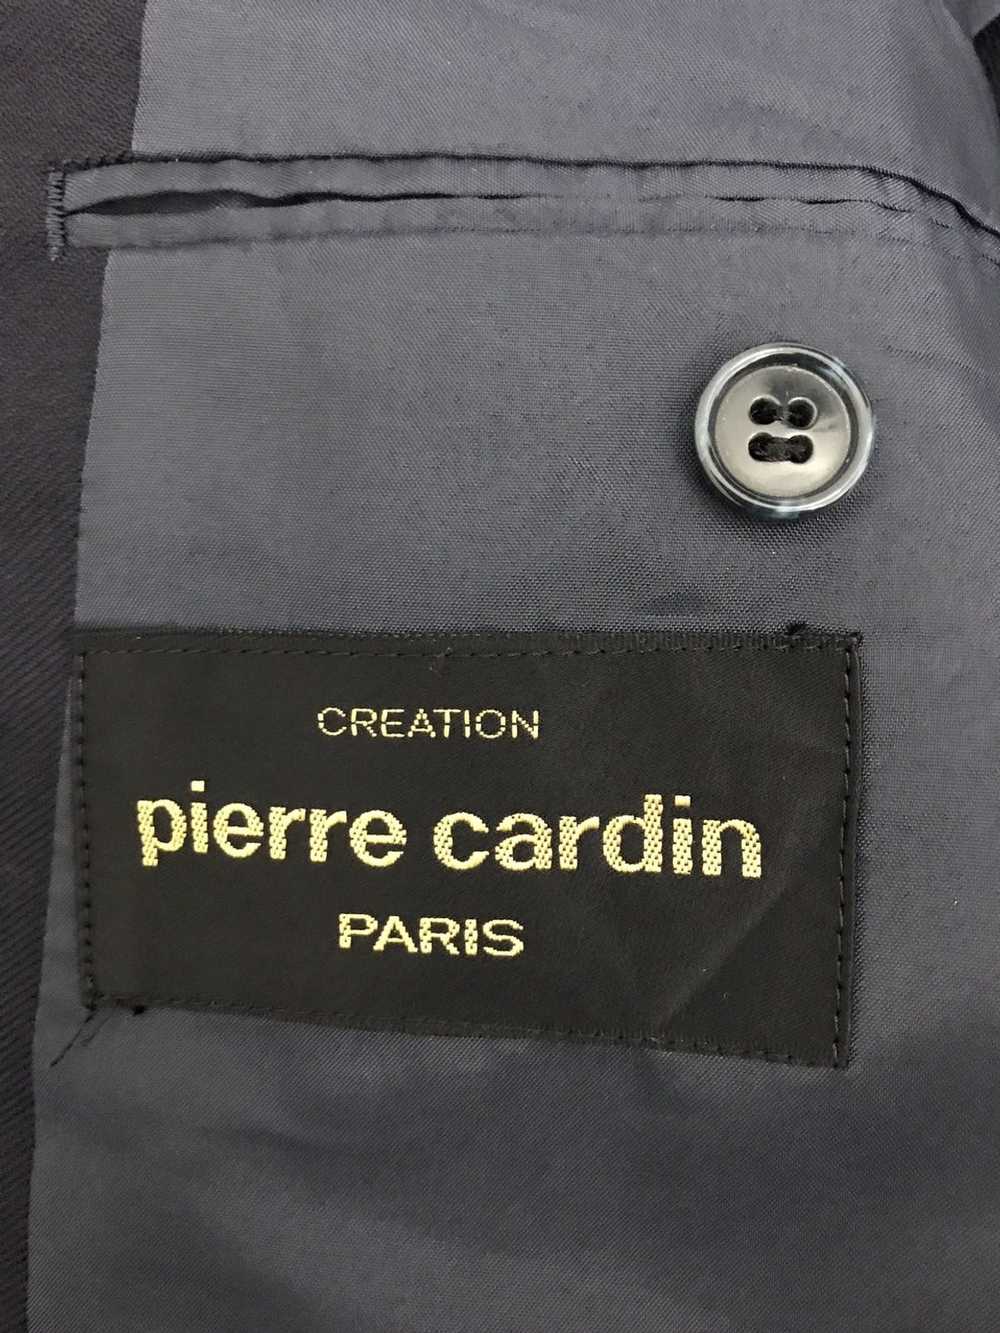 Pierre Cardin Pierre Cardin Blazer - image 7